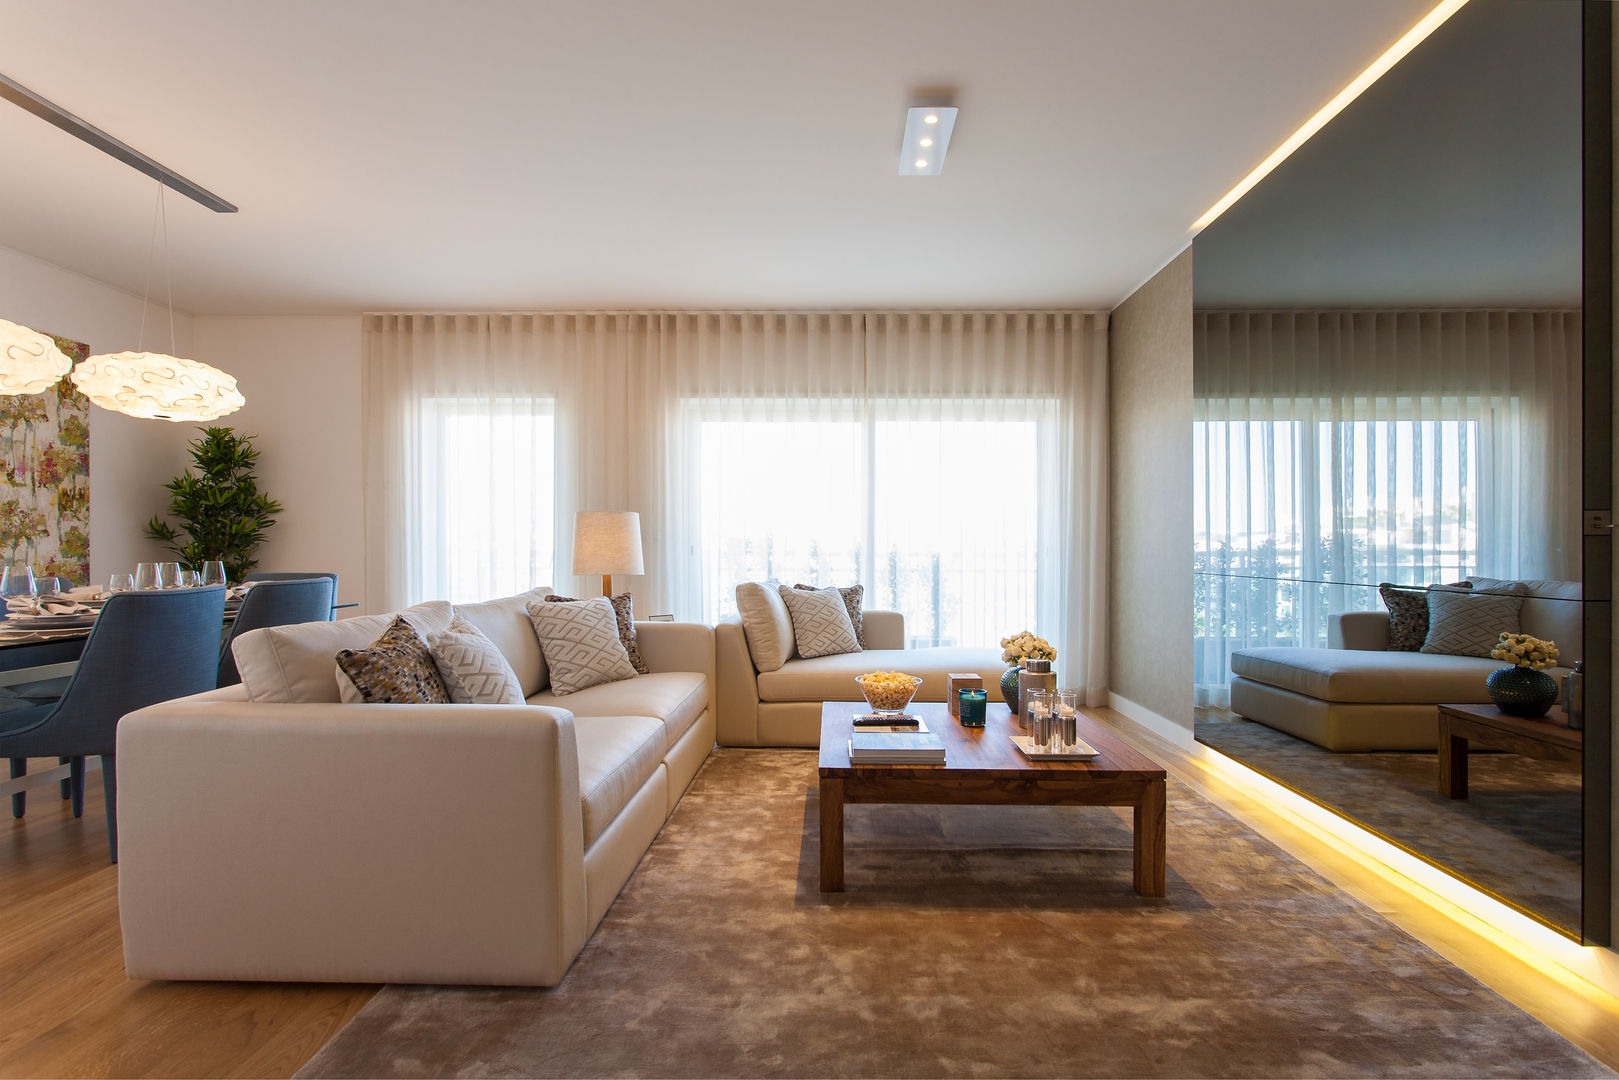 Sala Comum Traço Magenta - Design de Interiores Salas de estar modernas